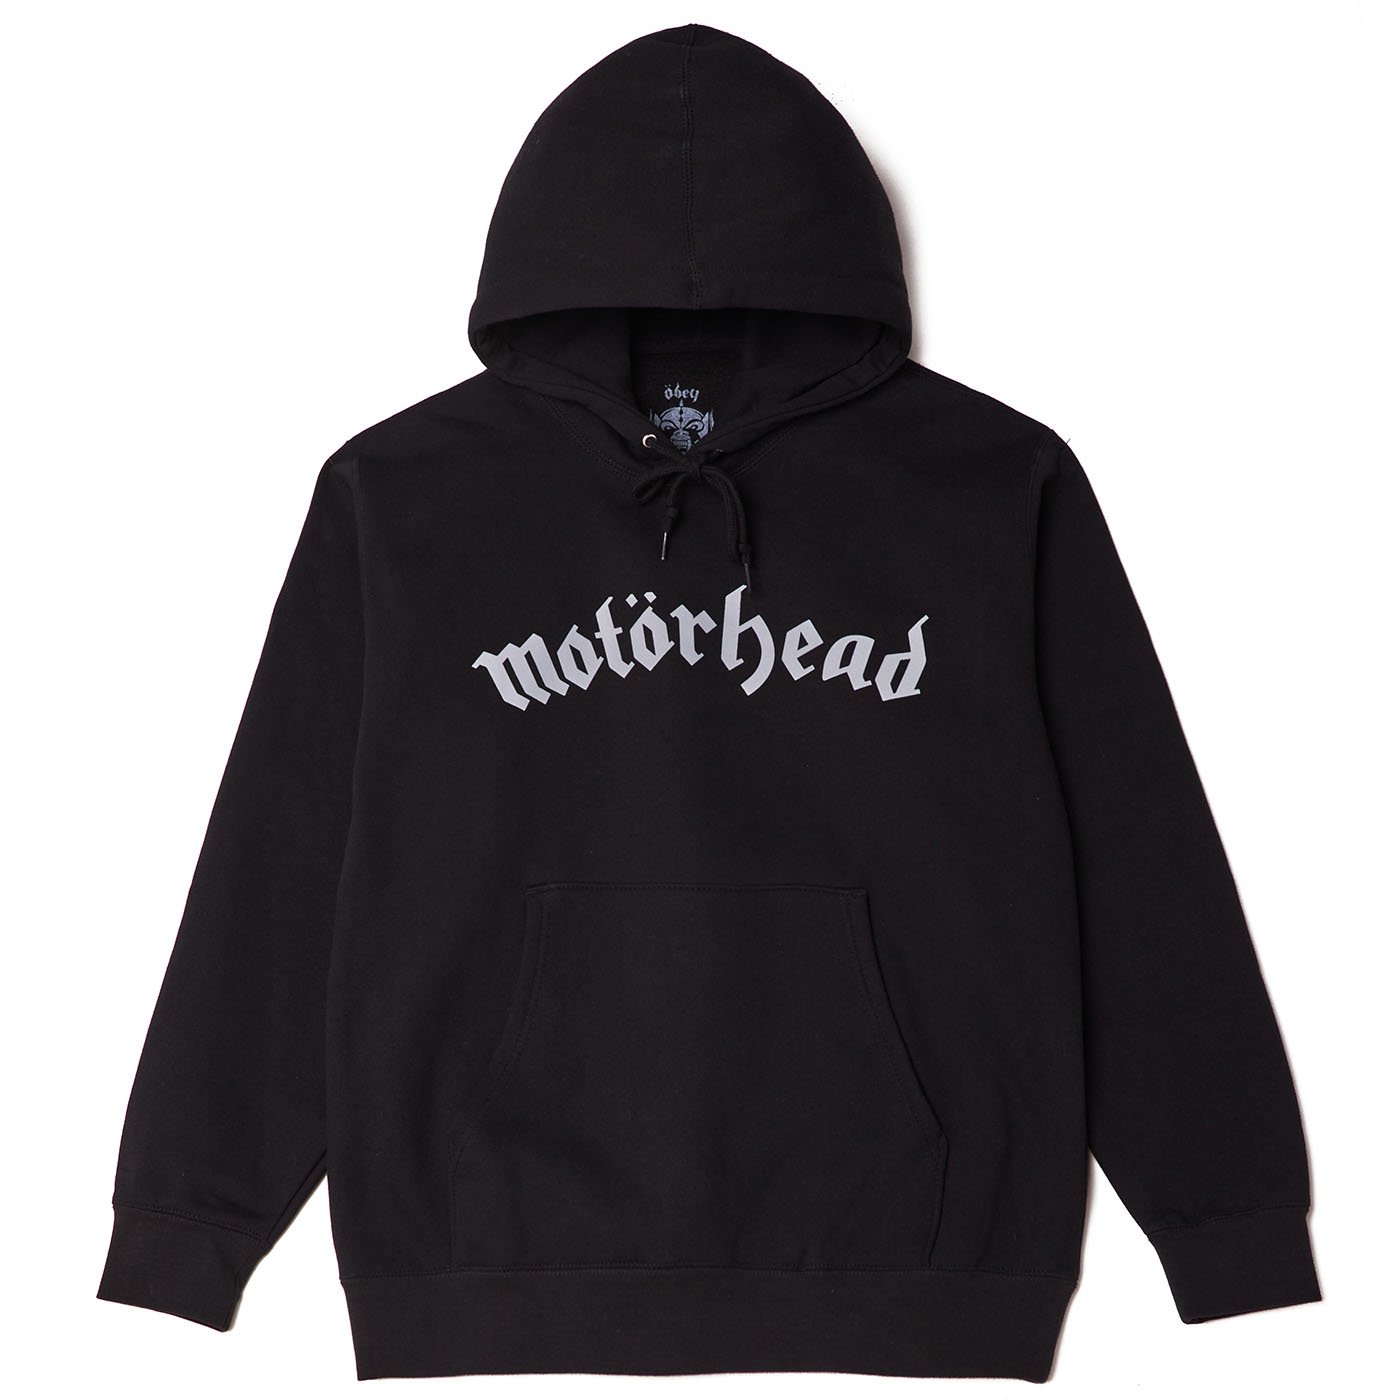 OBEY x Motörhead Warpig Hooded Sweatshirt